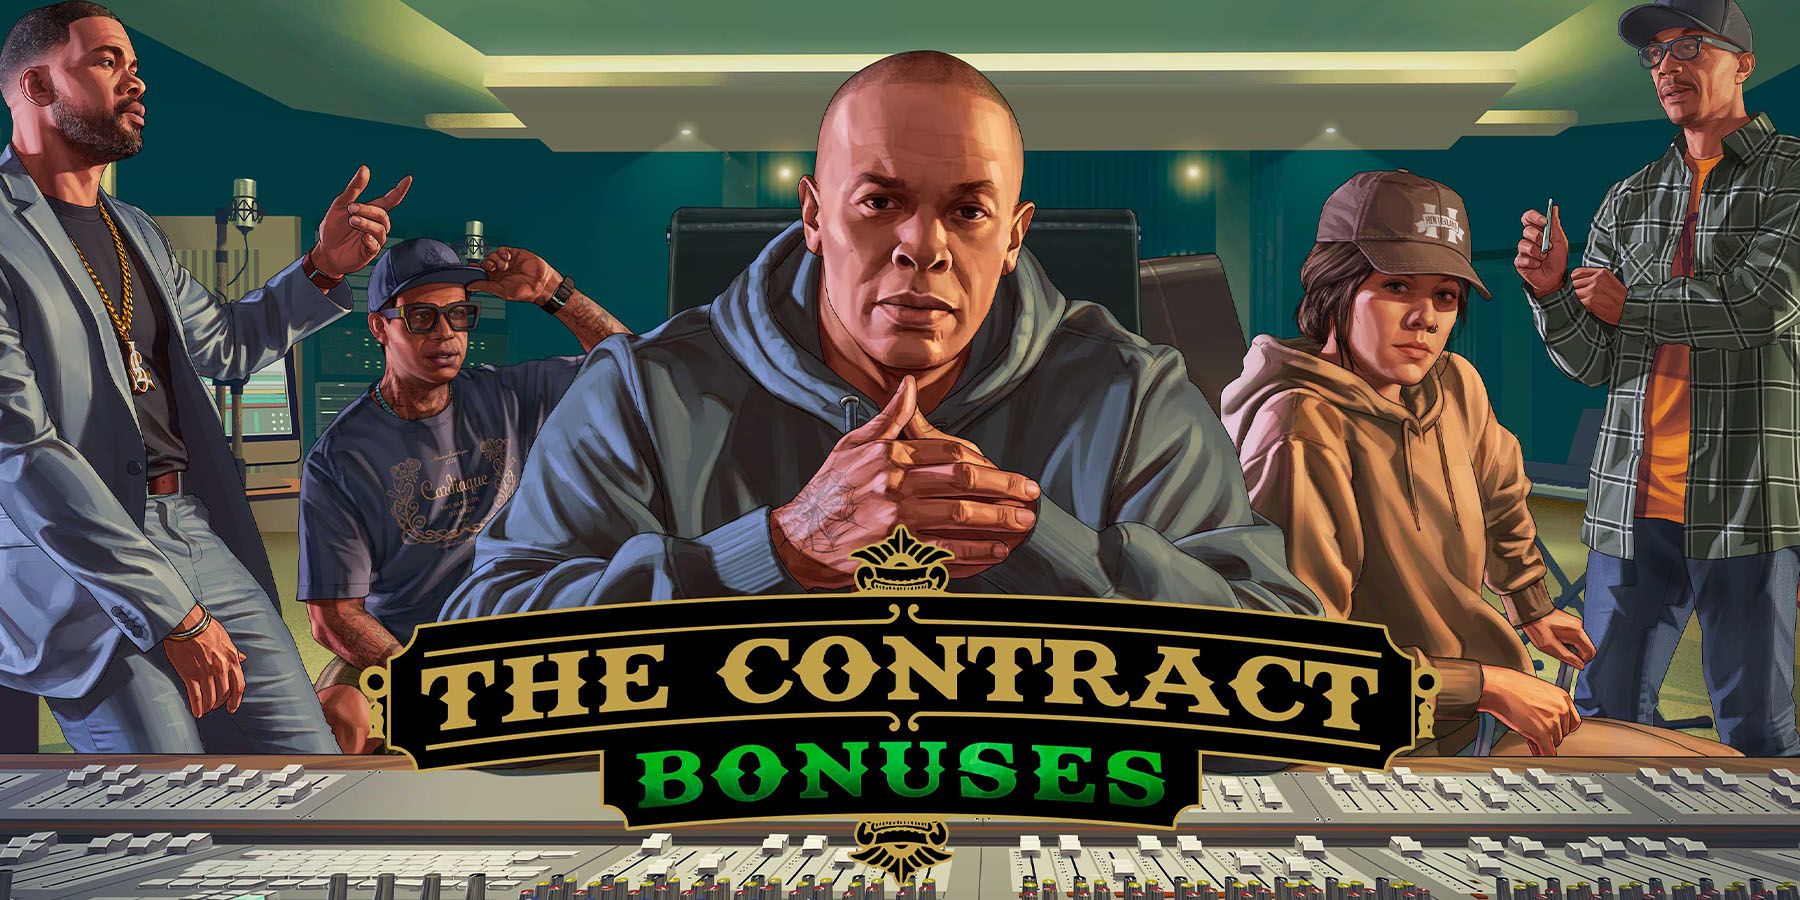 GTA Online Offering Bonuses for Helping Dr. Dre